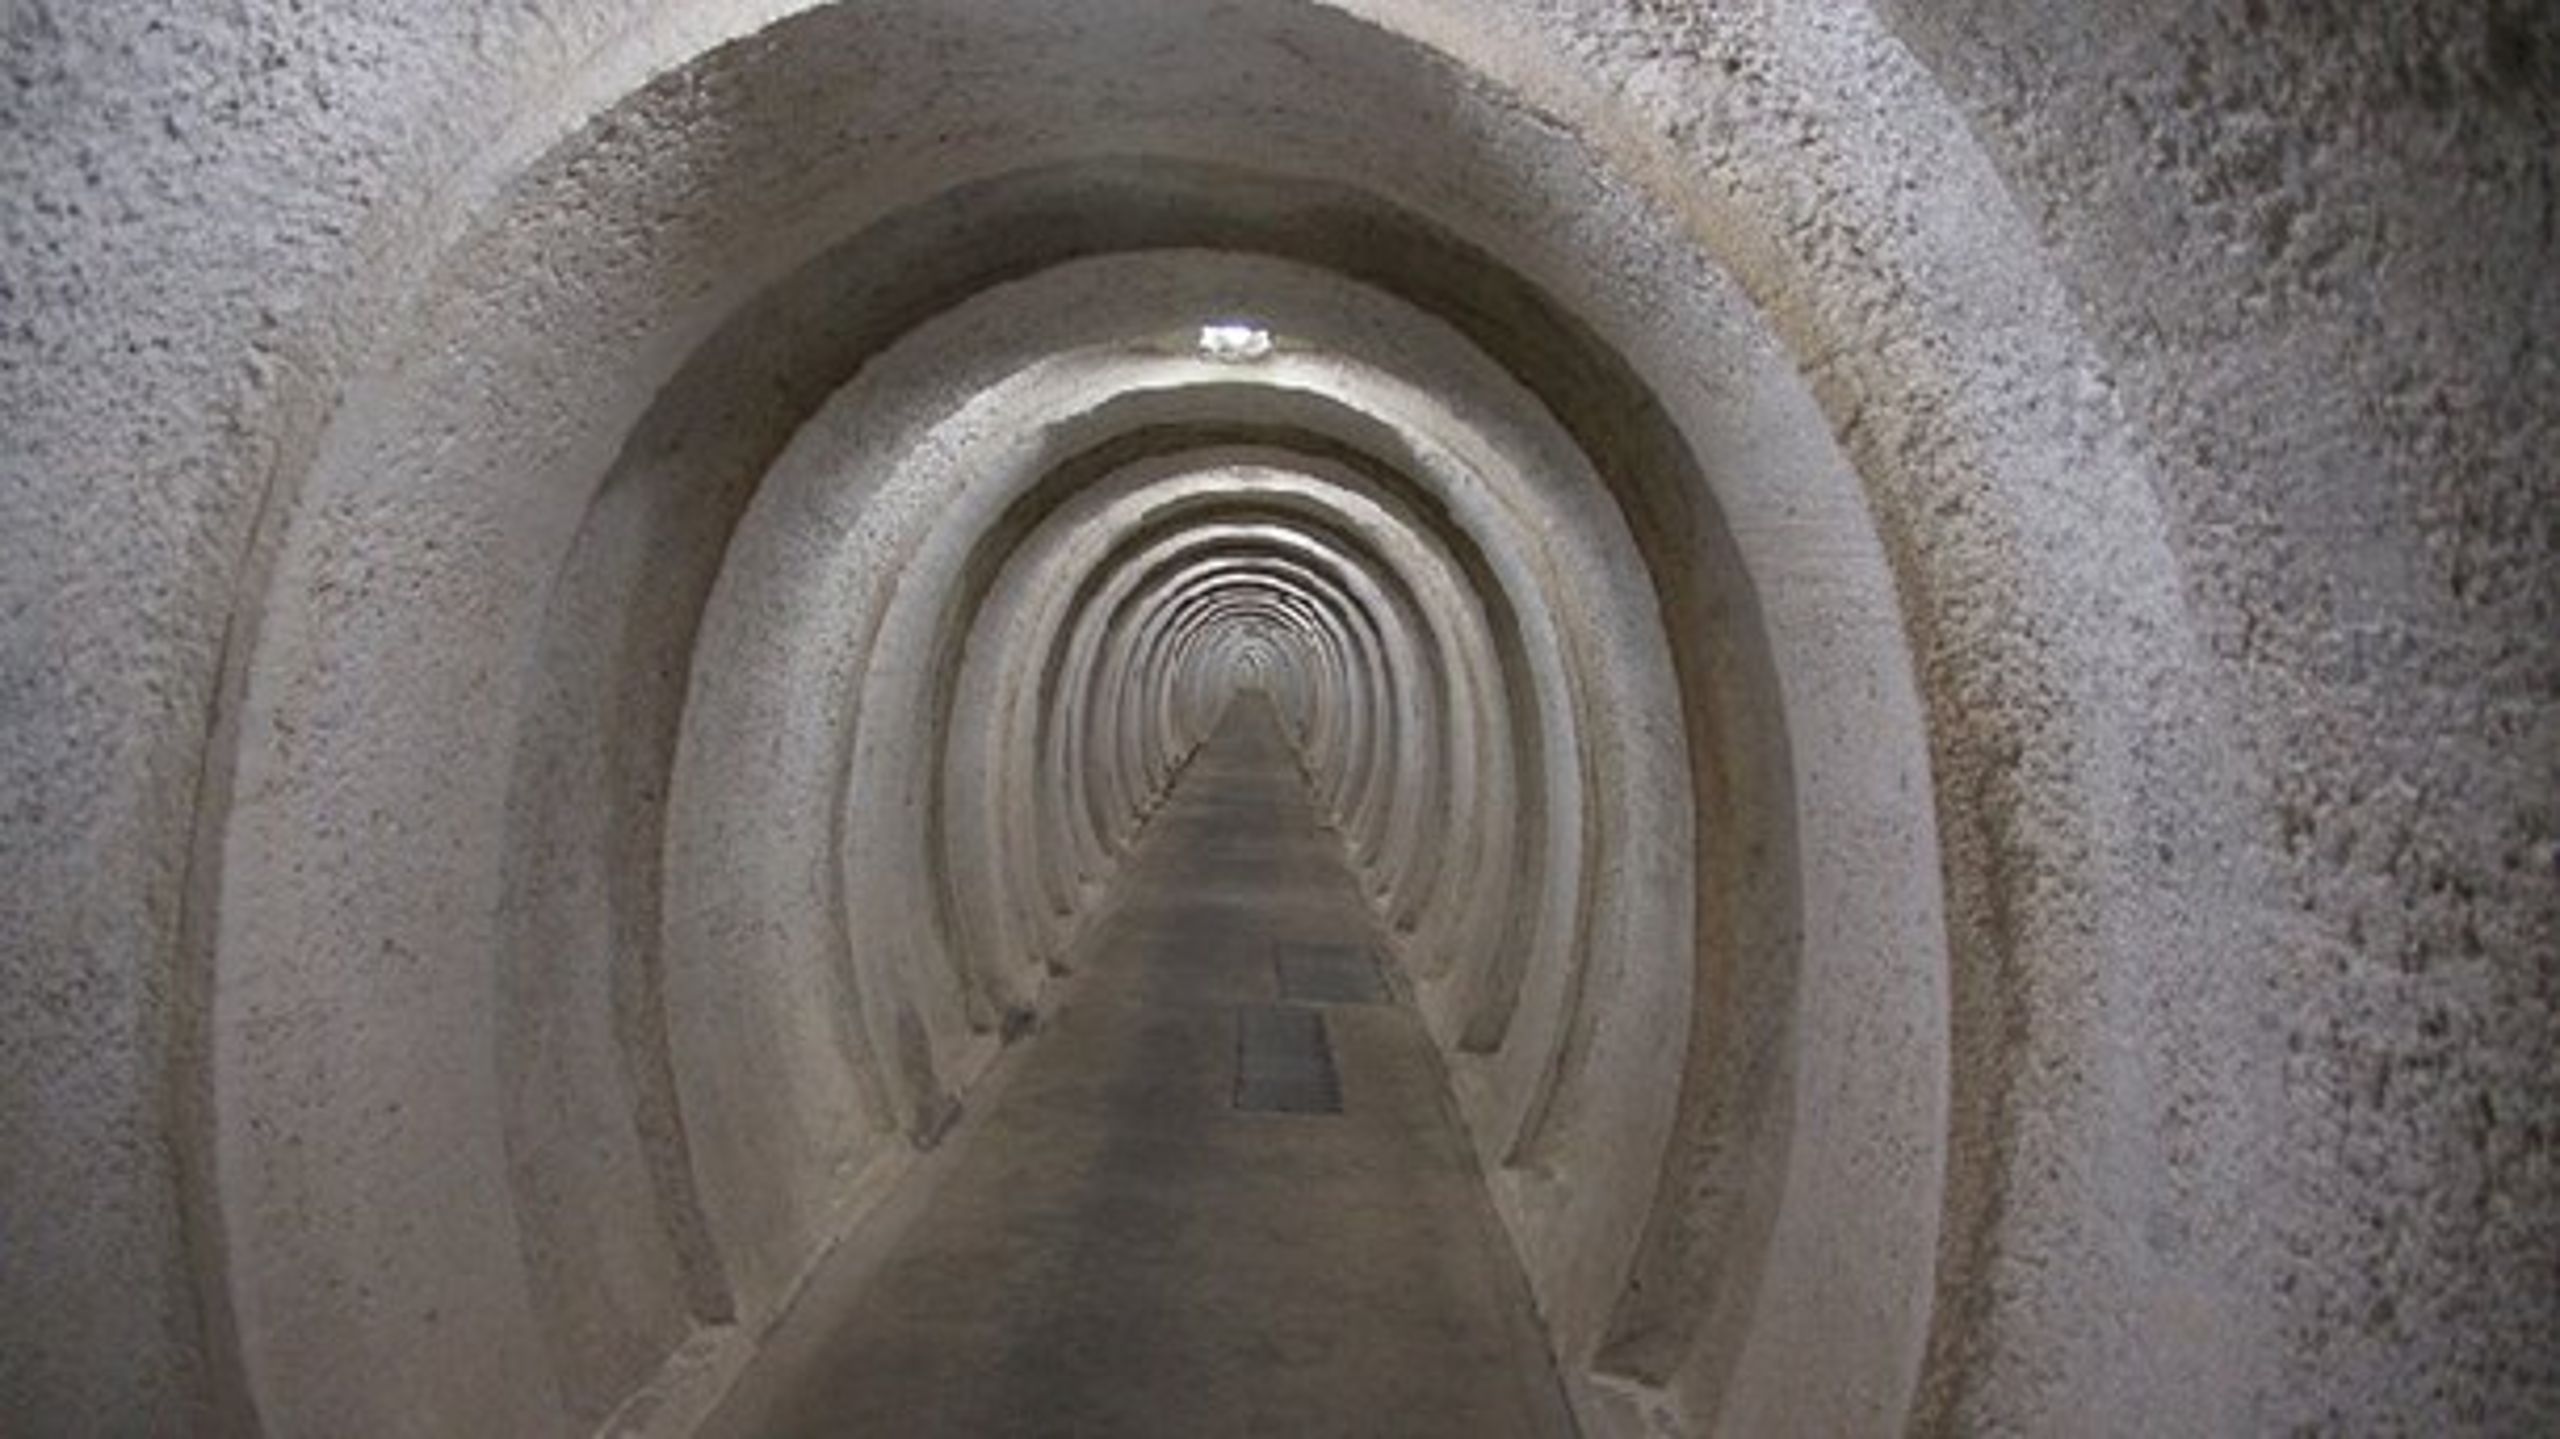 Regan Vest&nbsp;består af fire underjordiske betonringe, der ligger oven på hinanden to og to med et areal på tilsammen cirka 5.500 kvadratmeter.